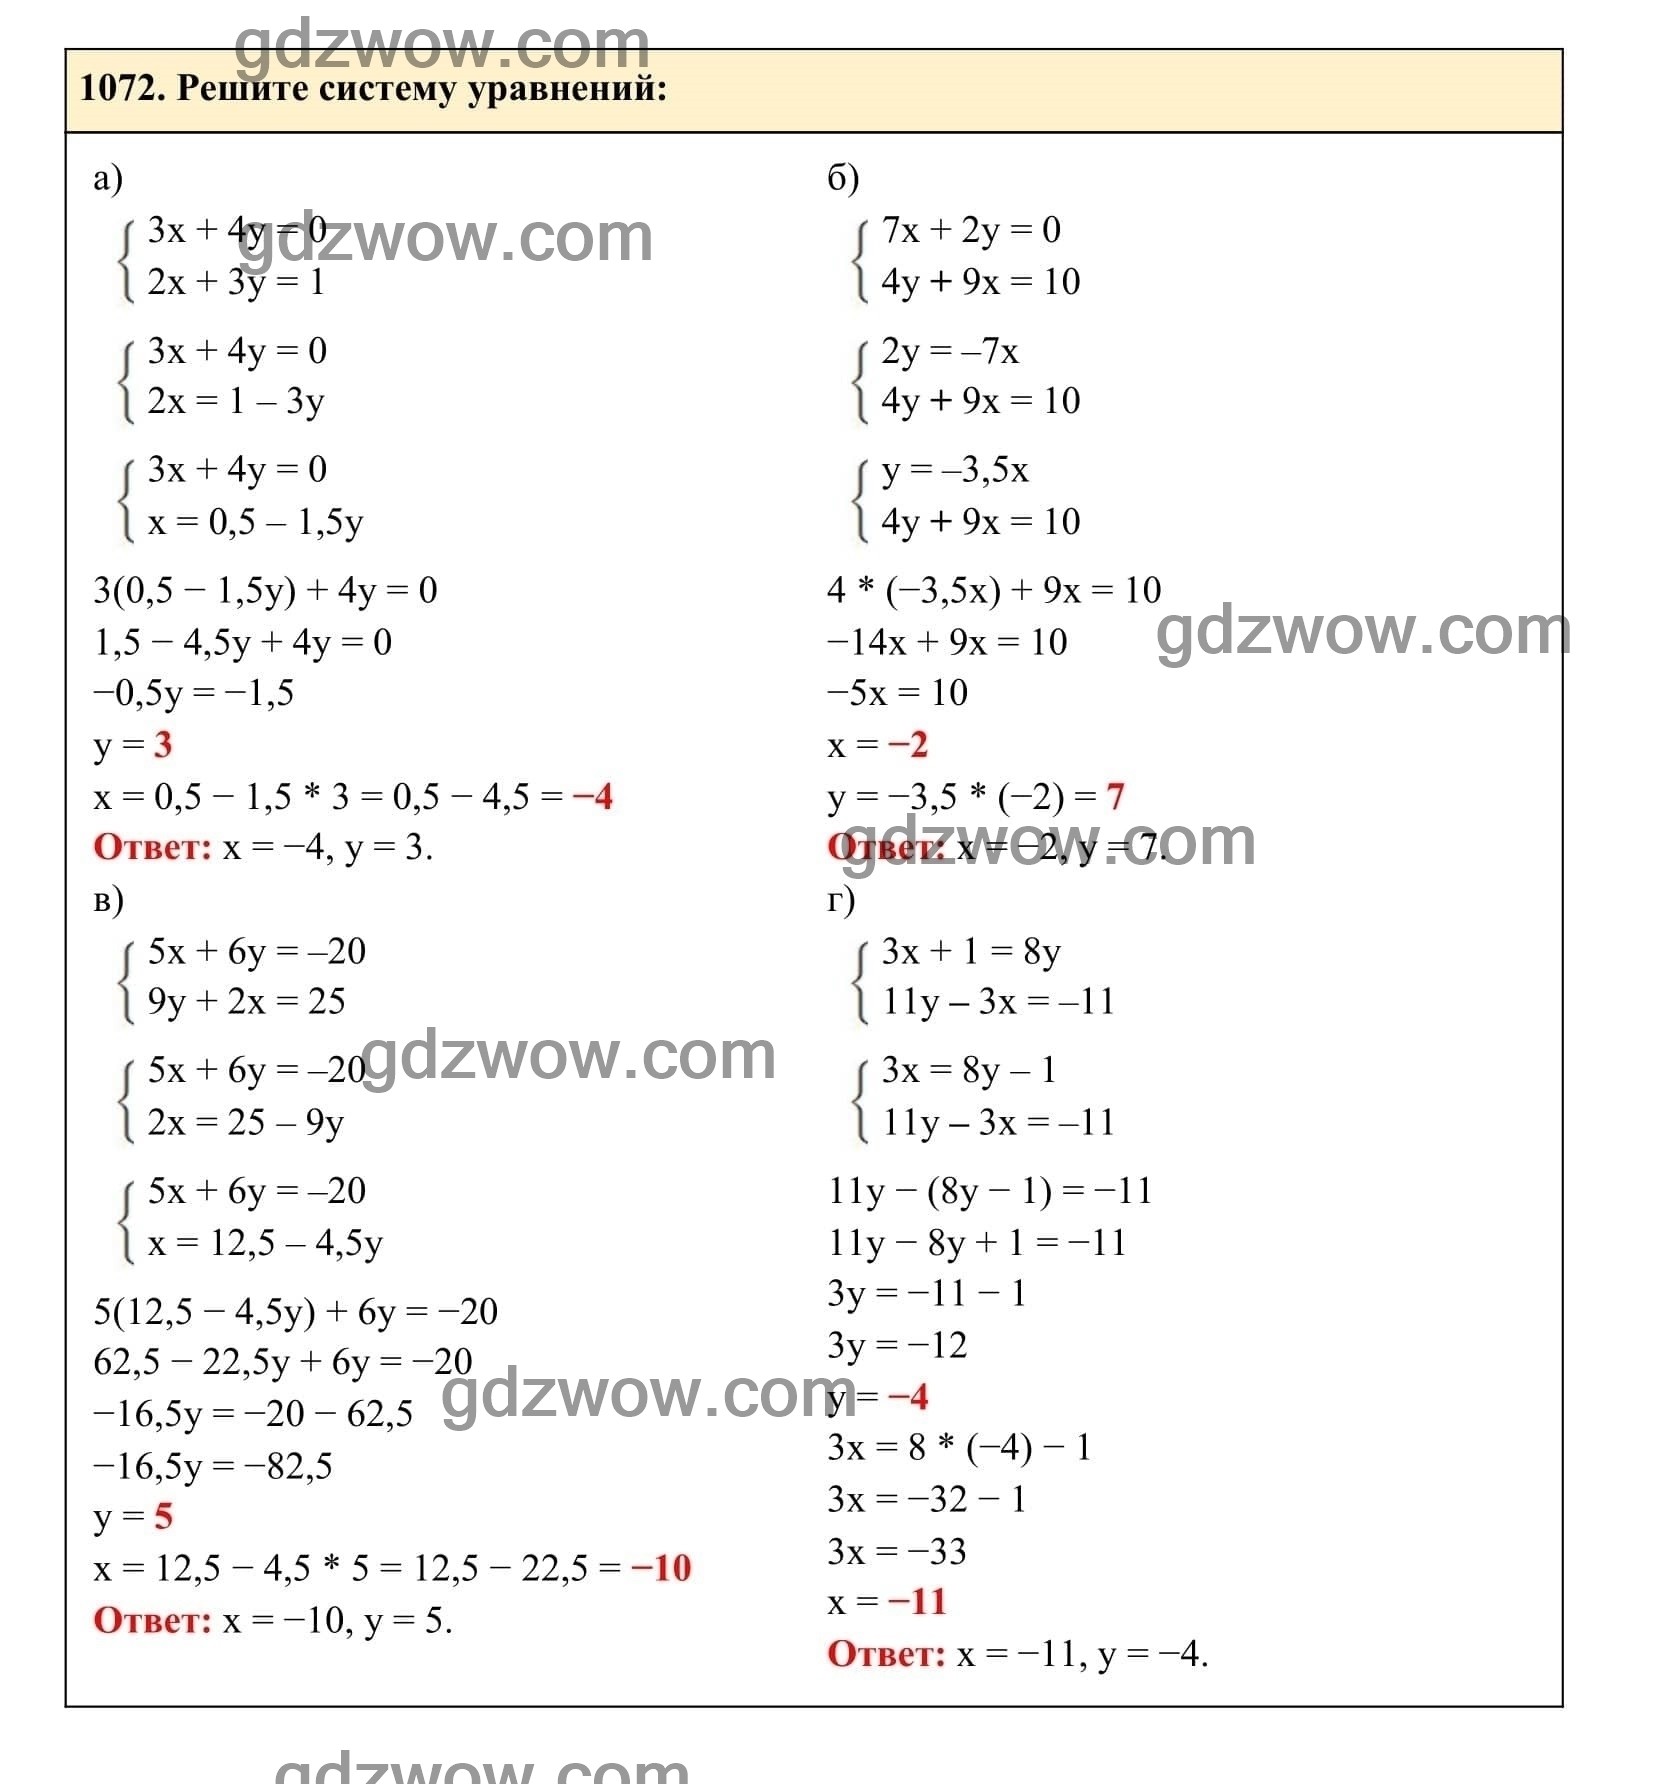 Упражнение 1072 - ГДЗ по Алгебре 7 класс Учебник Макарычев (решебник) - GDZwow